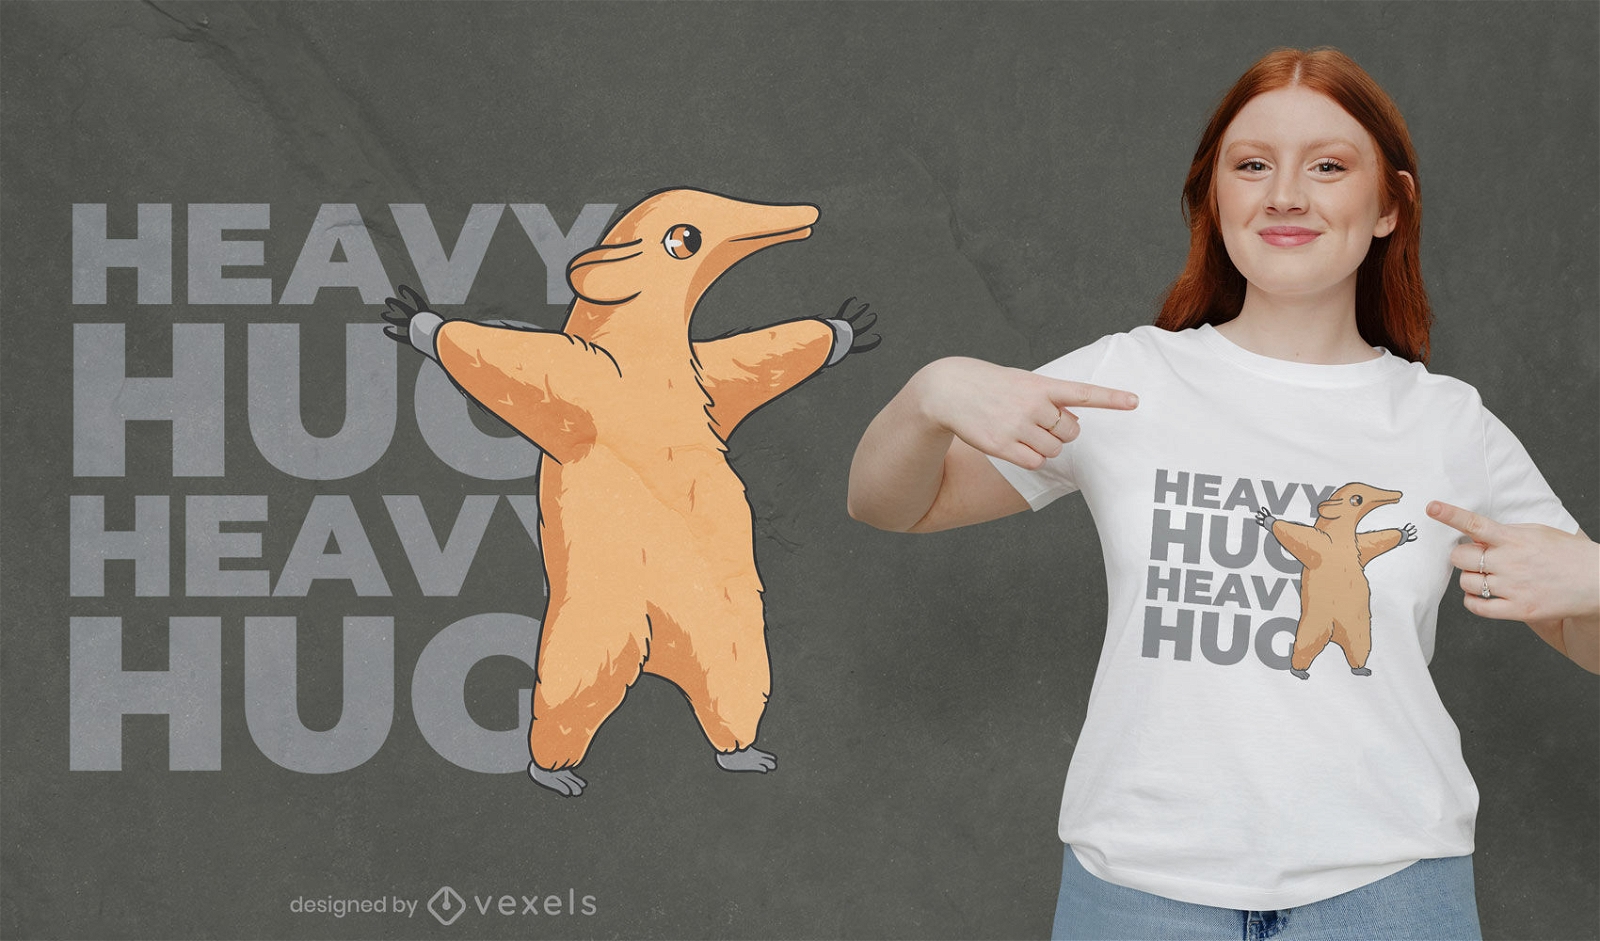 Heavy hug anteater t-shirt design